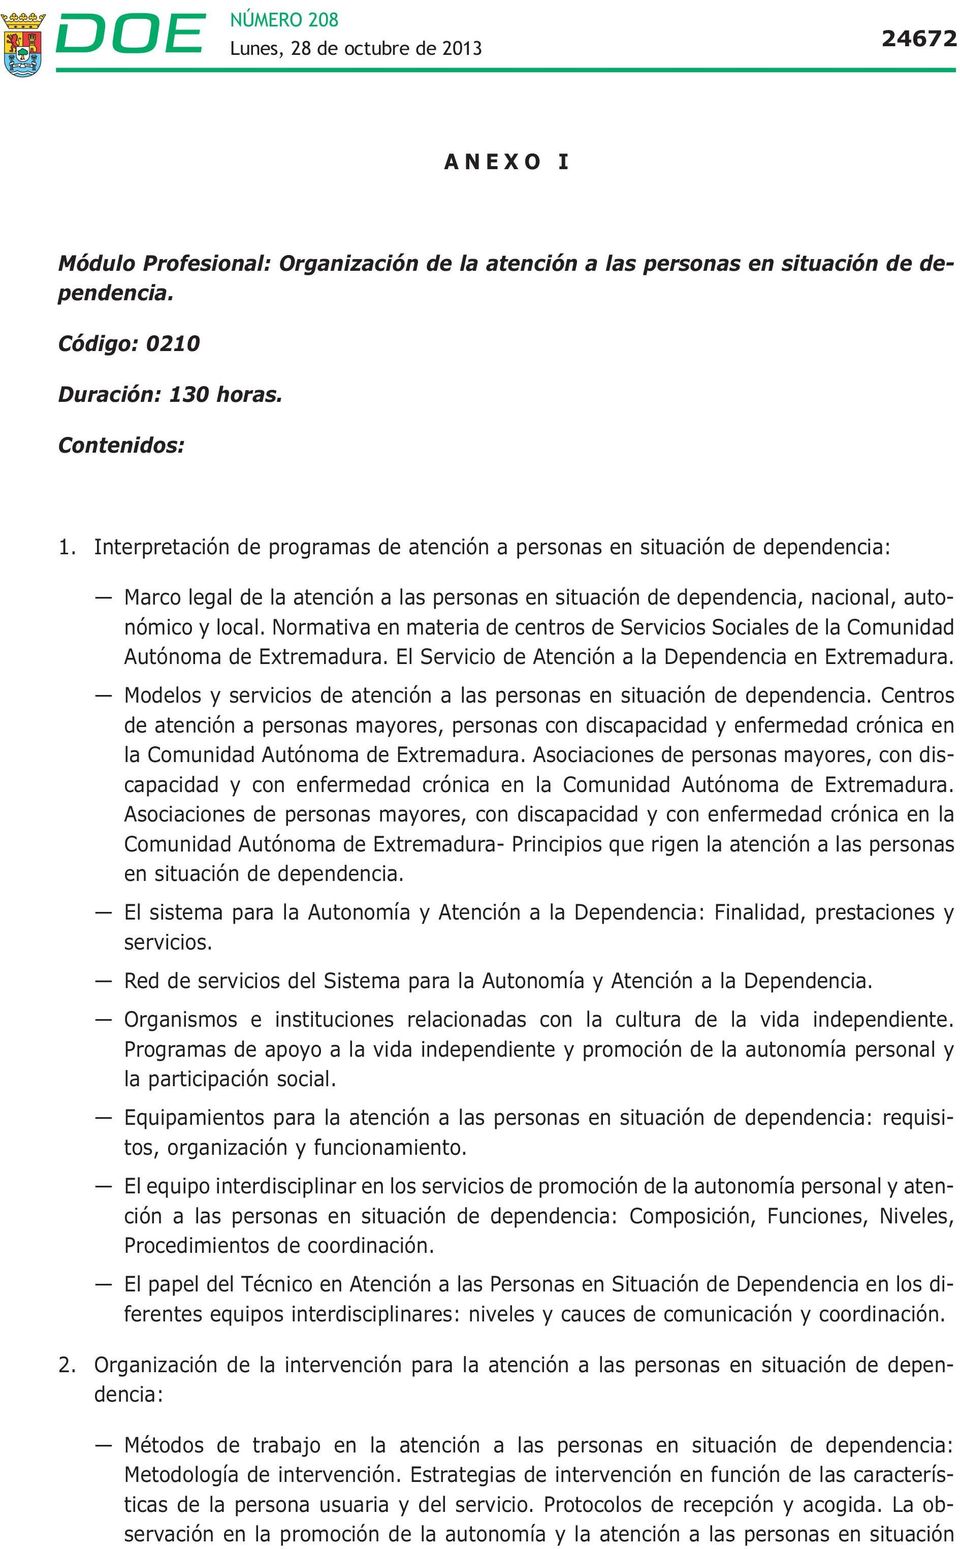 Normativa en materia de centros de Servicios Sociales de la Comunidad Autónoma de Extremadura. El Servicio de Atención a la Dependencia en Extremadura.